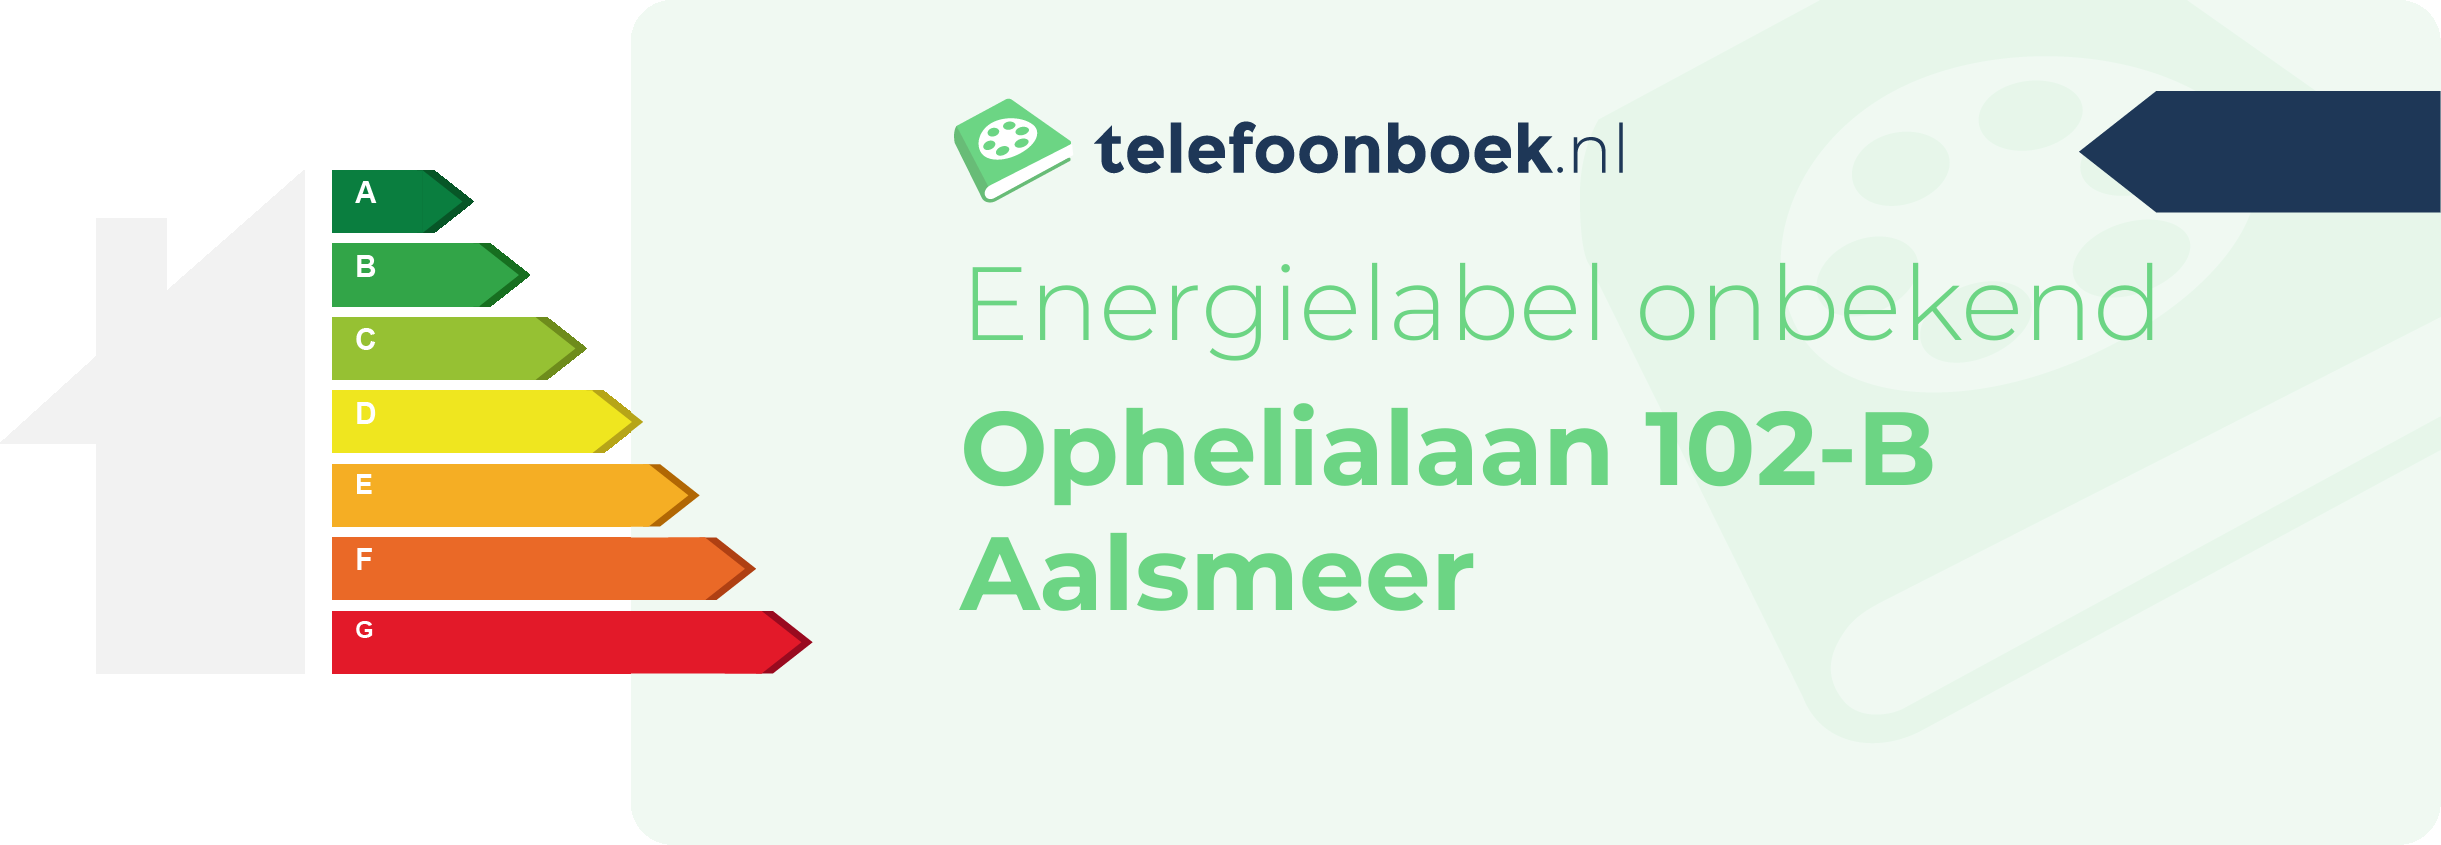 Energielabel Ophelialaan 102-B Aalsmeer